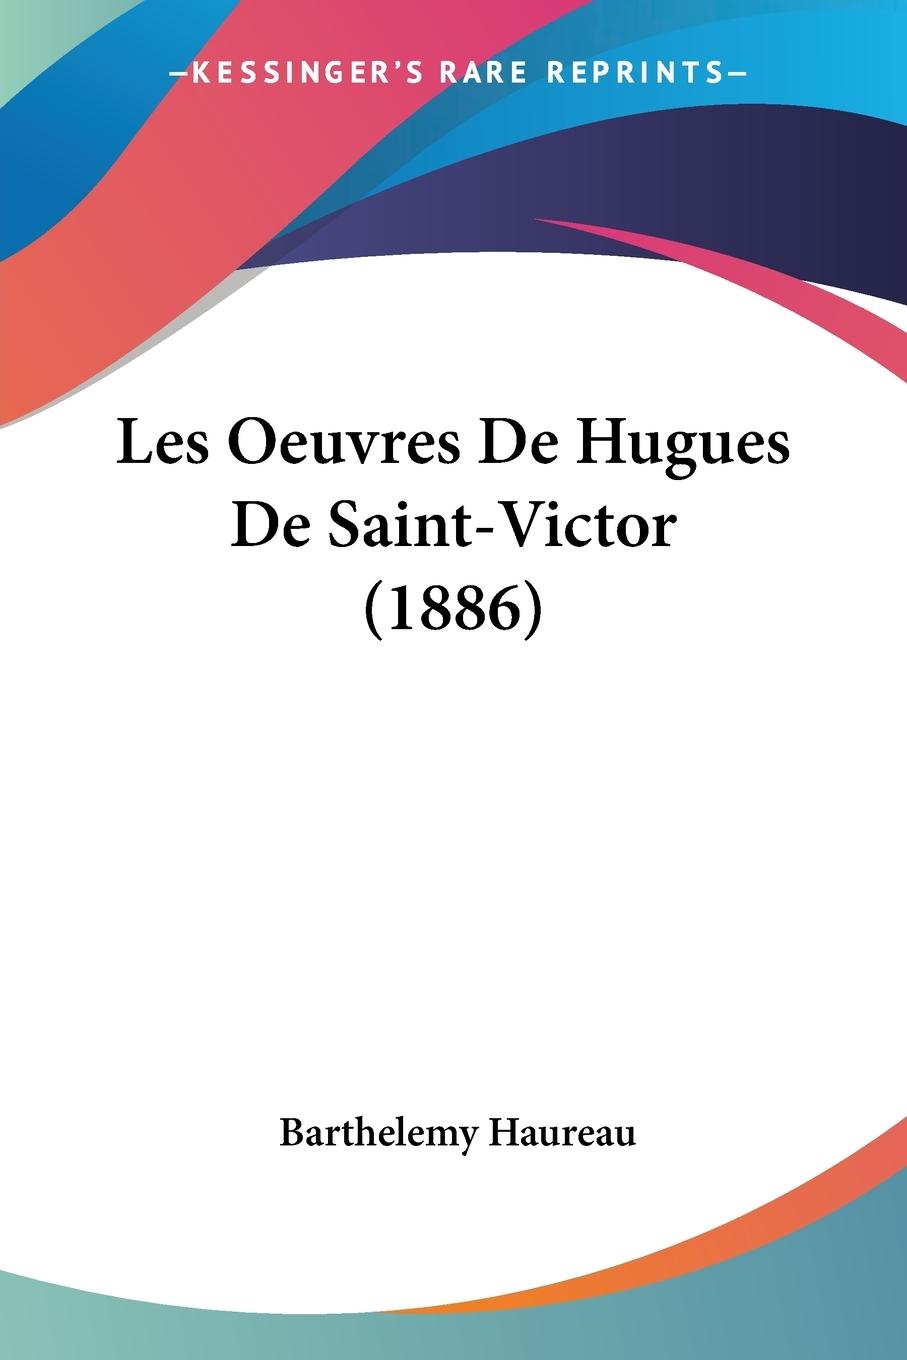 Les Oeuvres De Hugues De Saint-Victor (1886) - Haureau, Barthelemy